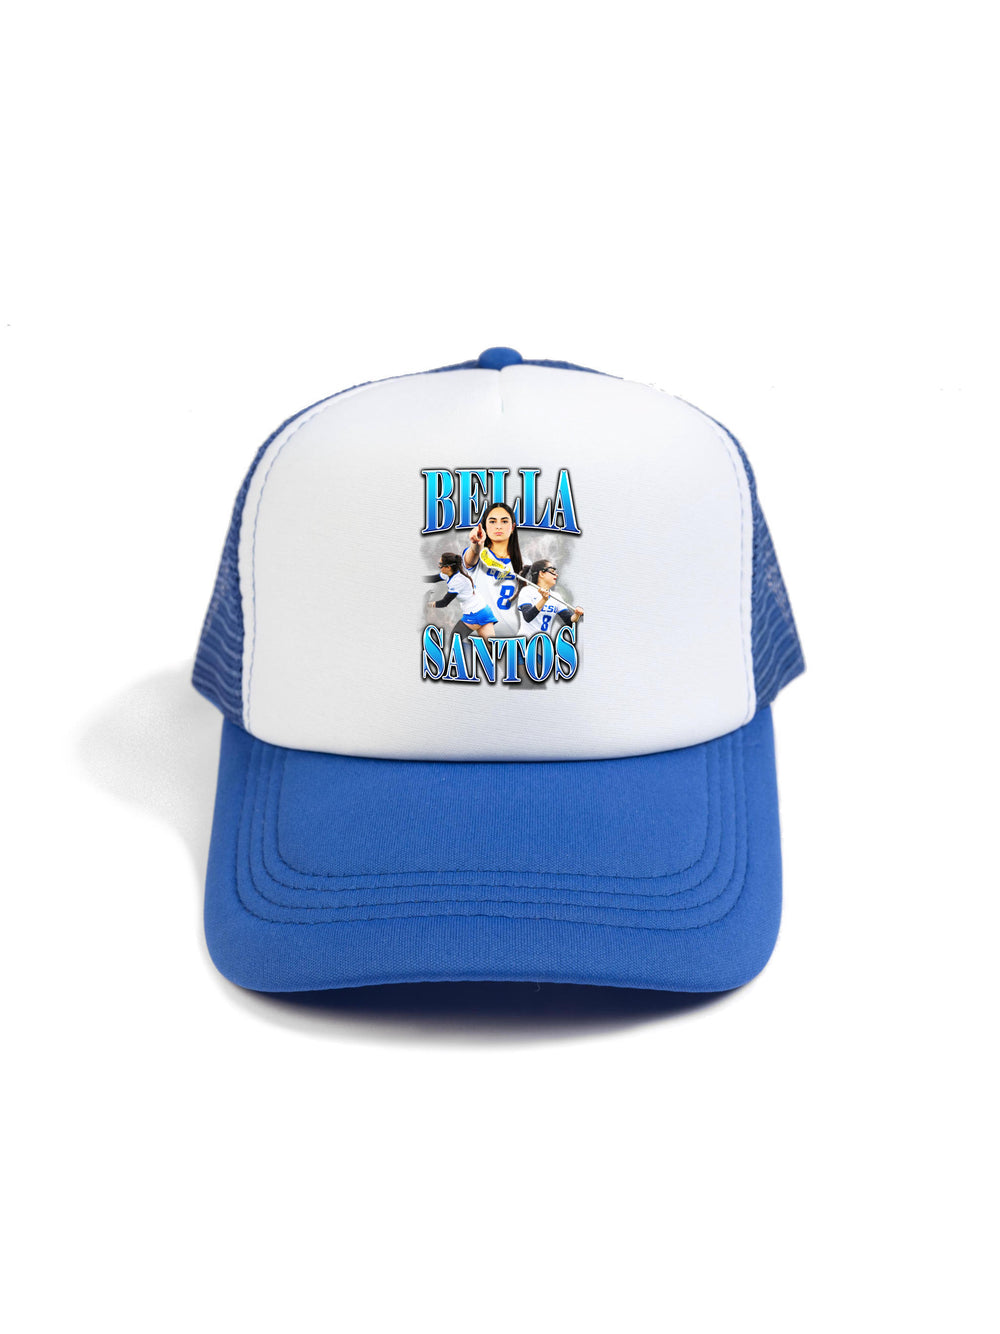 Bella Santos Trucker Hat